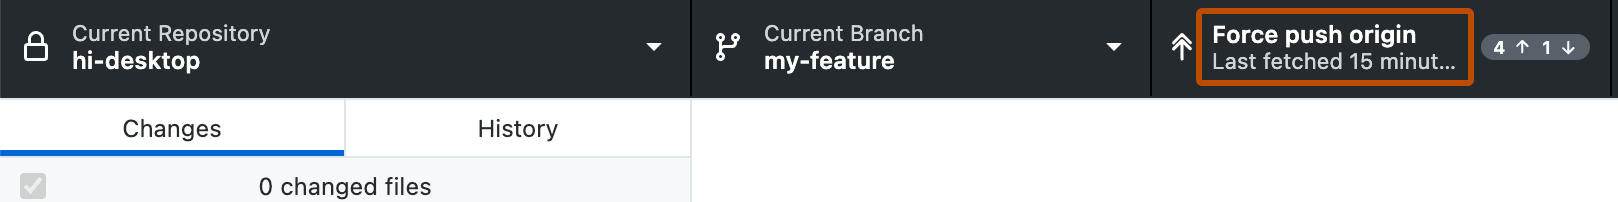 Captura de pantalla de la barra del repositorio. Un botón, etiquetado como "Forzar origen de inserción" y mostrado con un icono de una flecha hacia arriba doble, se describe en naranja.